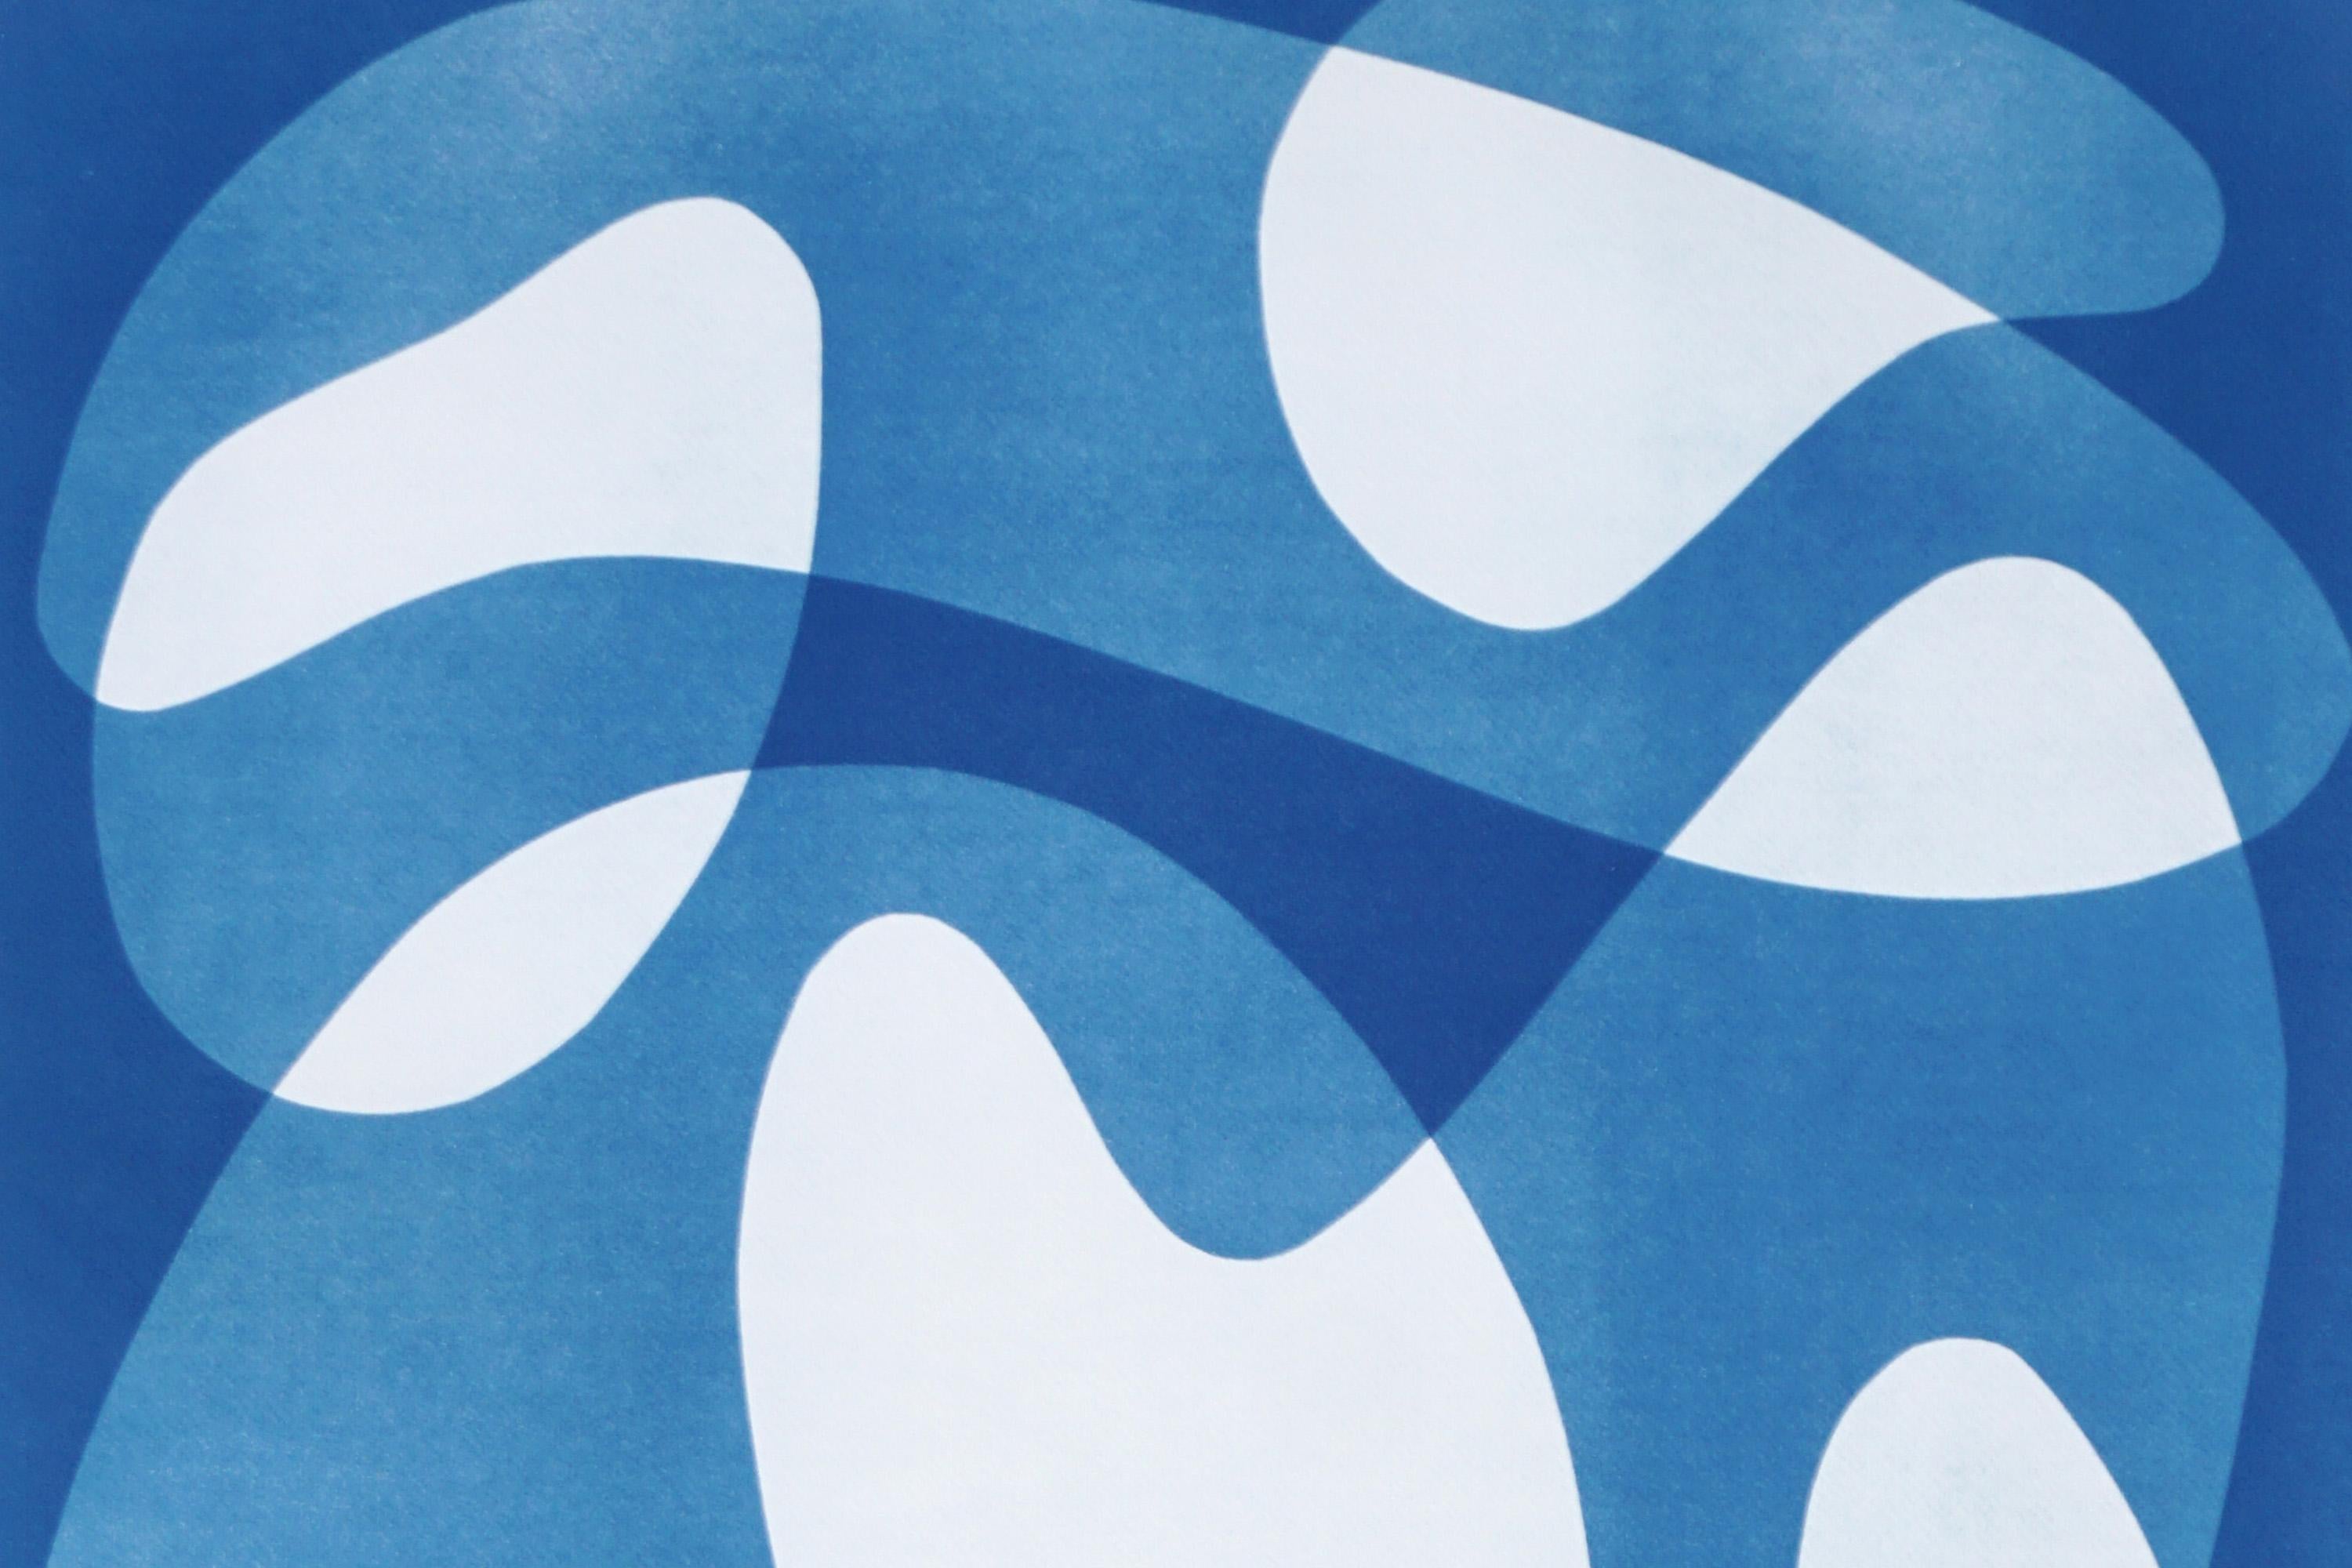 Mid-Century-Formen IV, weiße und blaue abstrakte schwebende Formen, einzigartige Cyanotypie (Bauhaus), Print, von Kind of Cyan